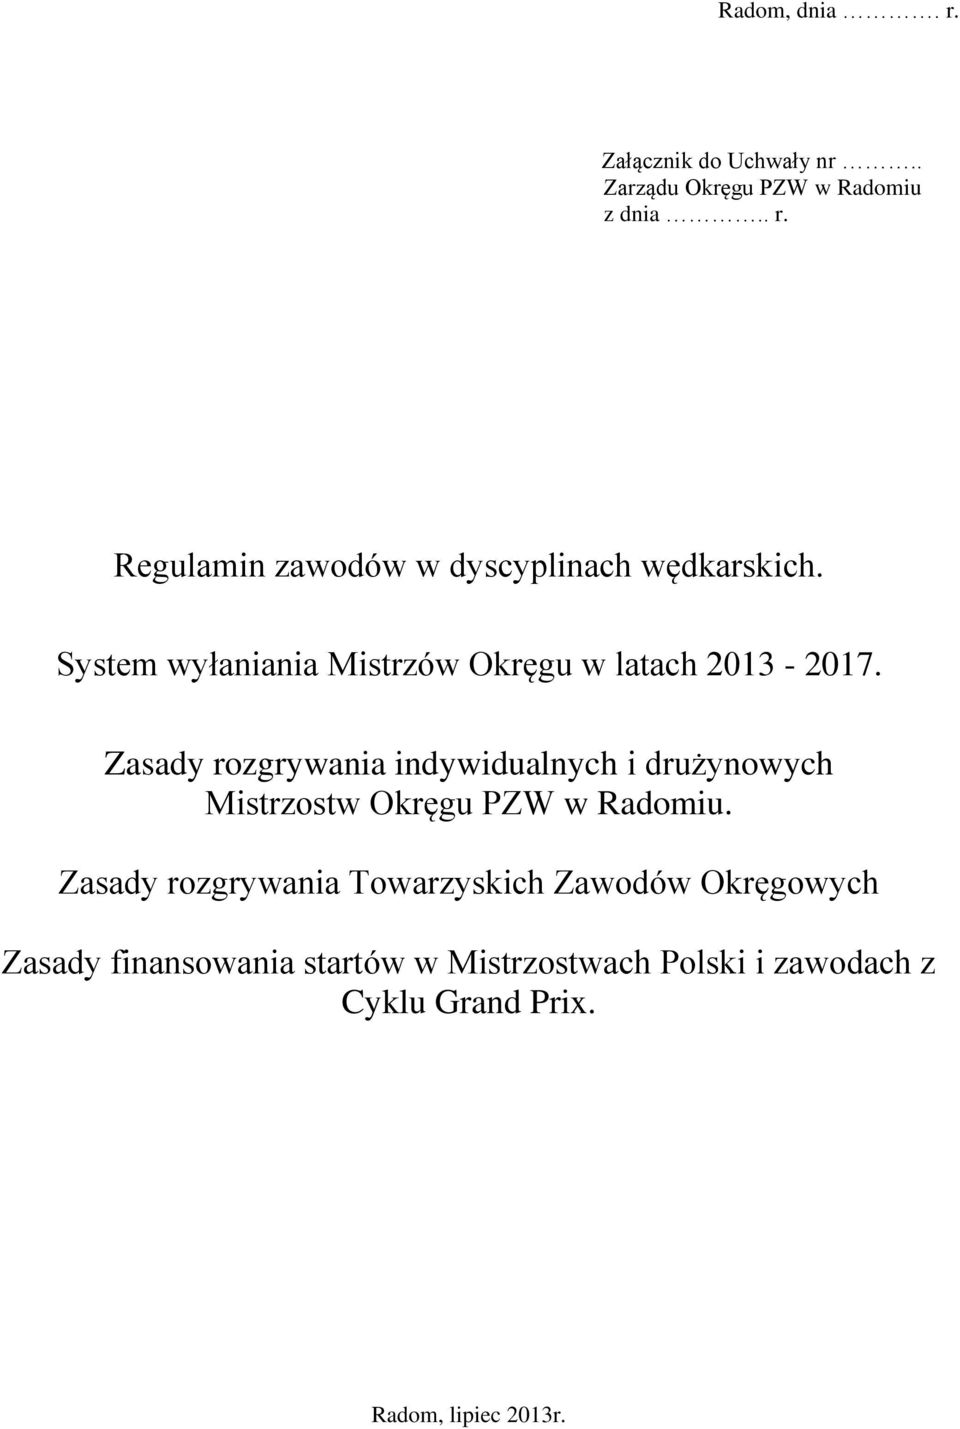 Zasady rozgrywania indywidualnych i drużynowych Mistrzostw Okręgu PZW w Radomiu.